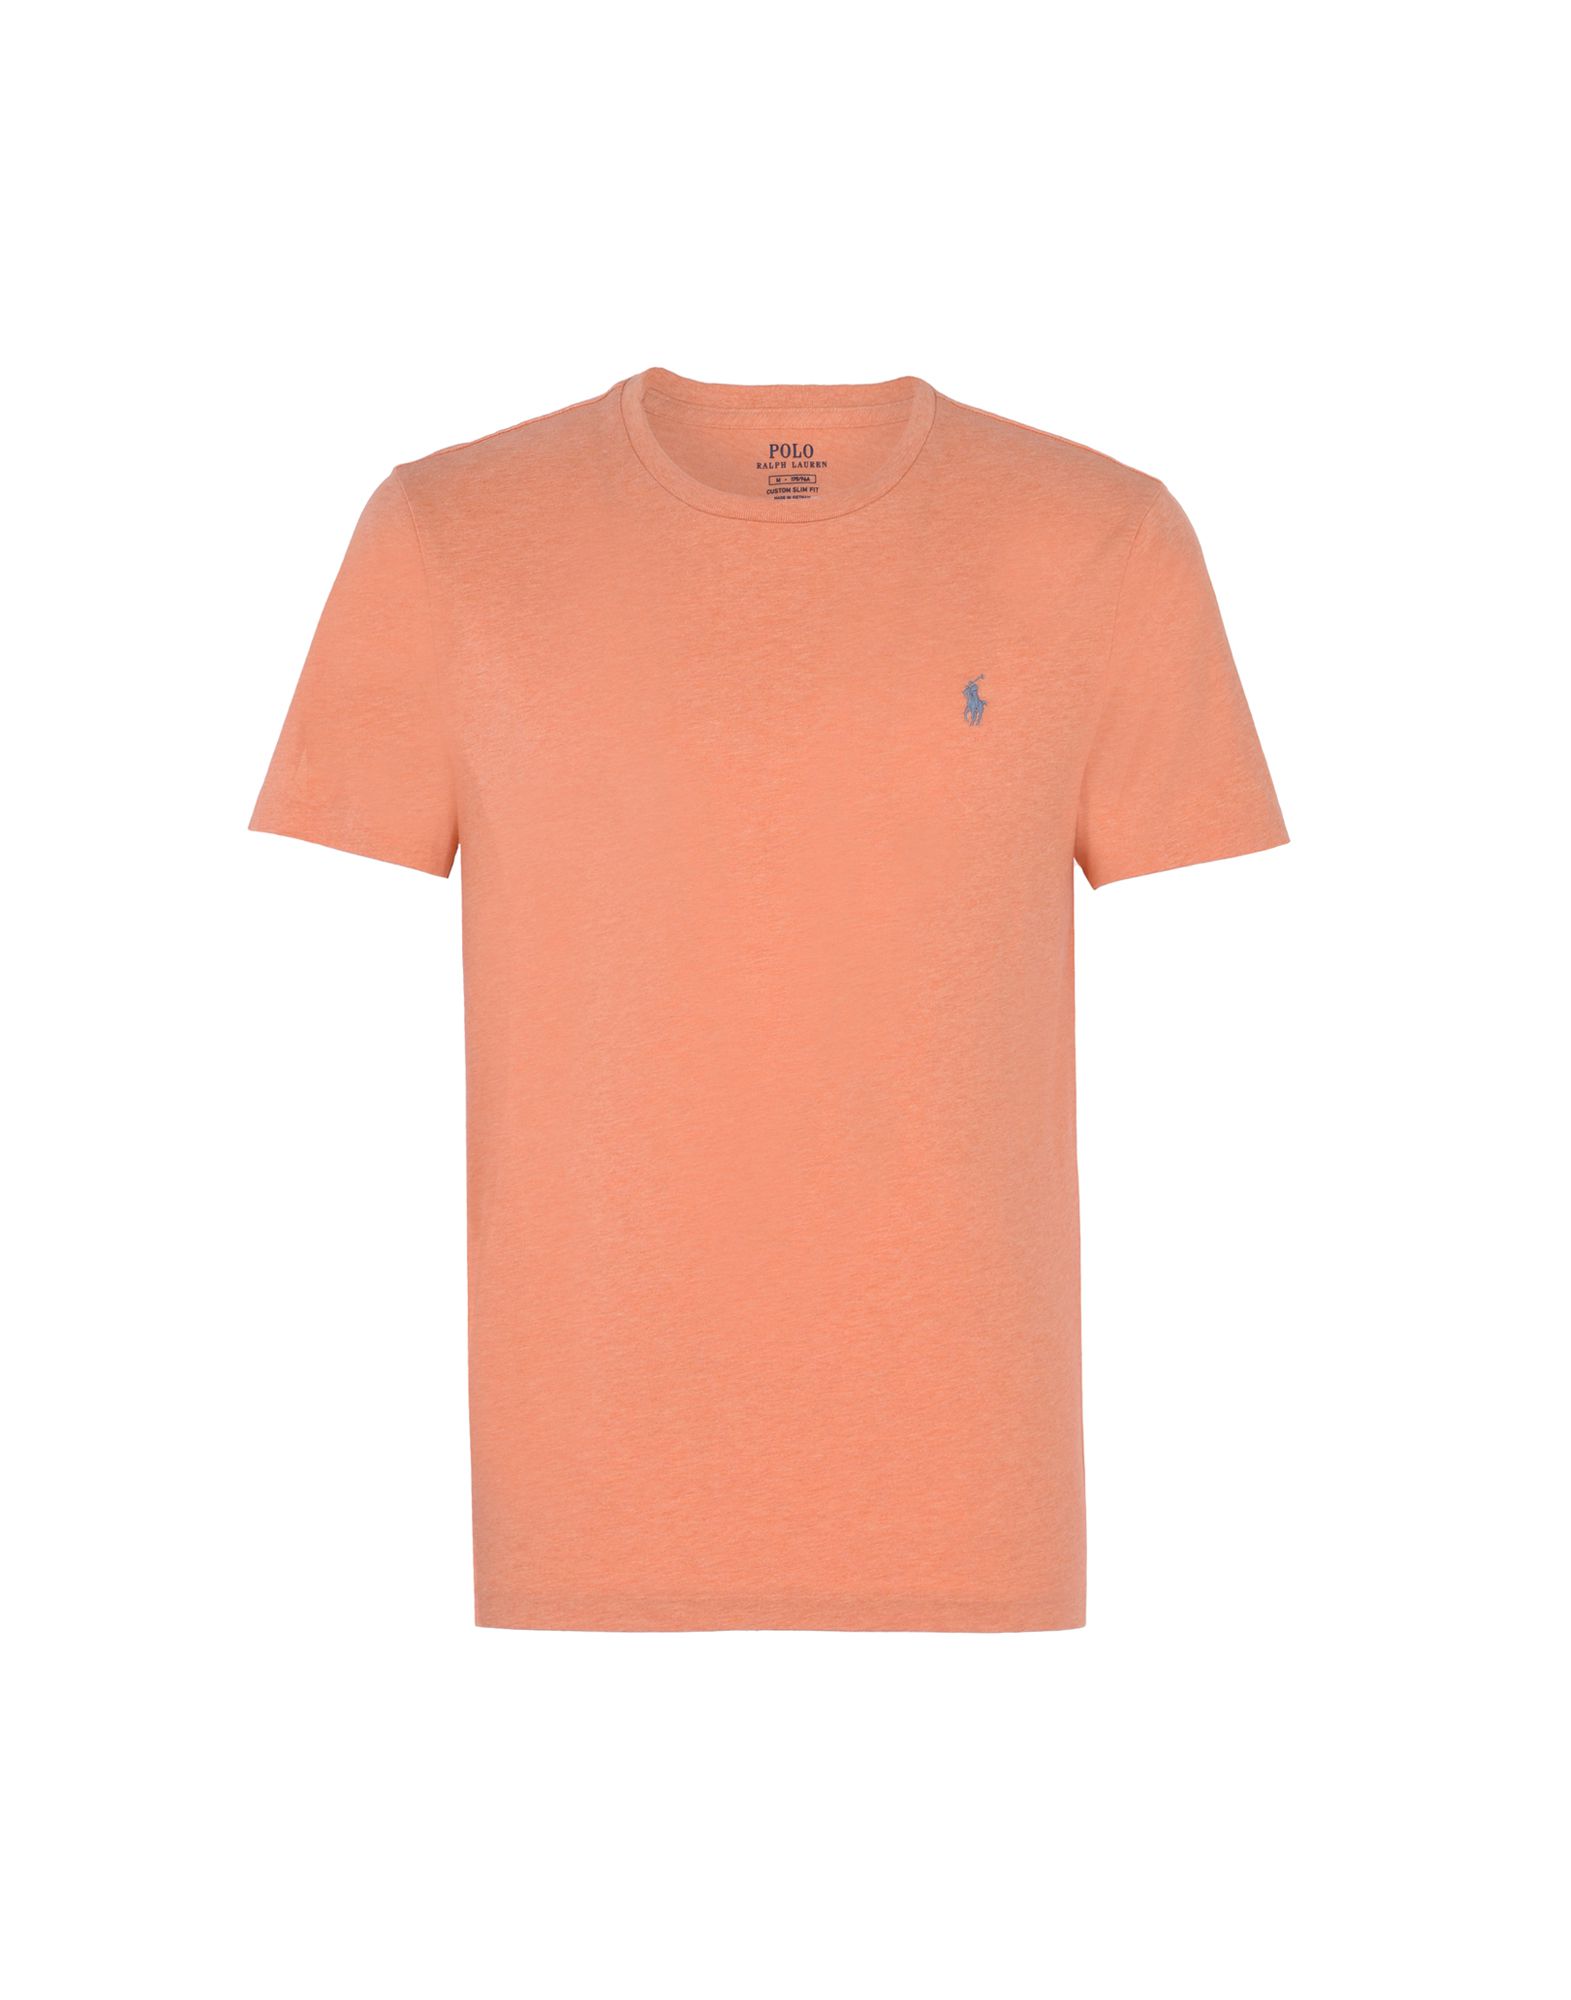 《送料無料》POLO RALPH LAUREN メンズ T シャツ オレンジ M コットン 100% Custom Fit T shirt